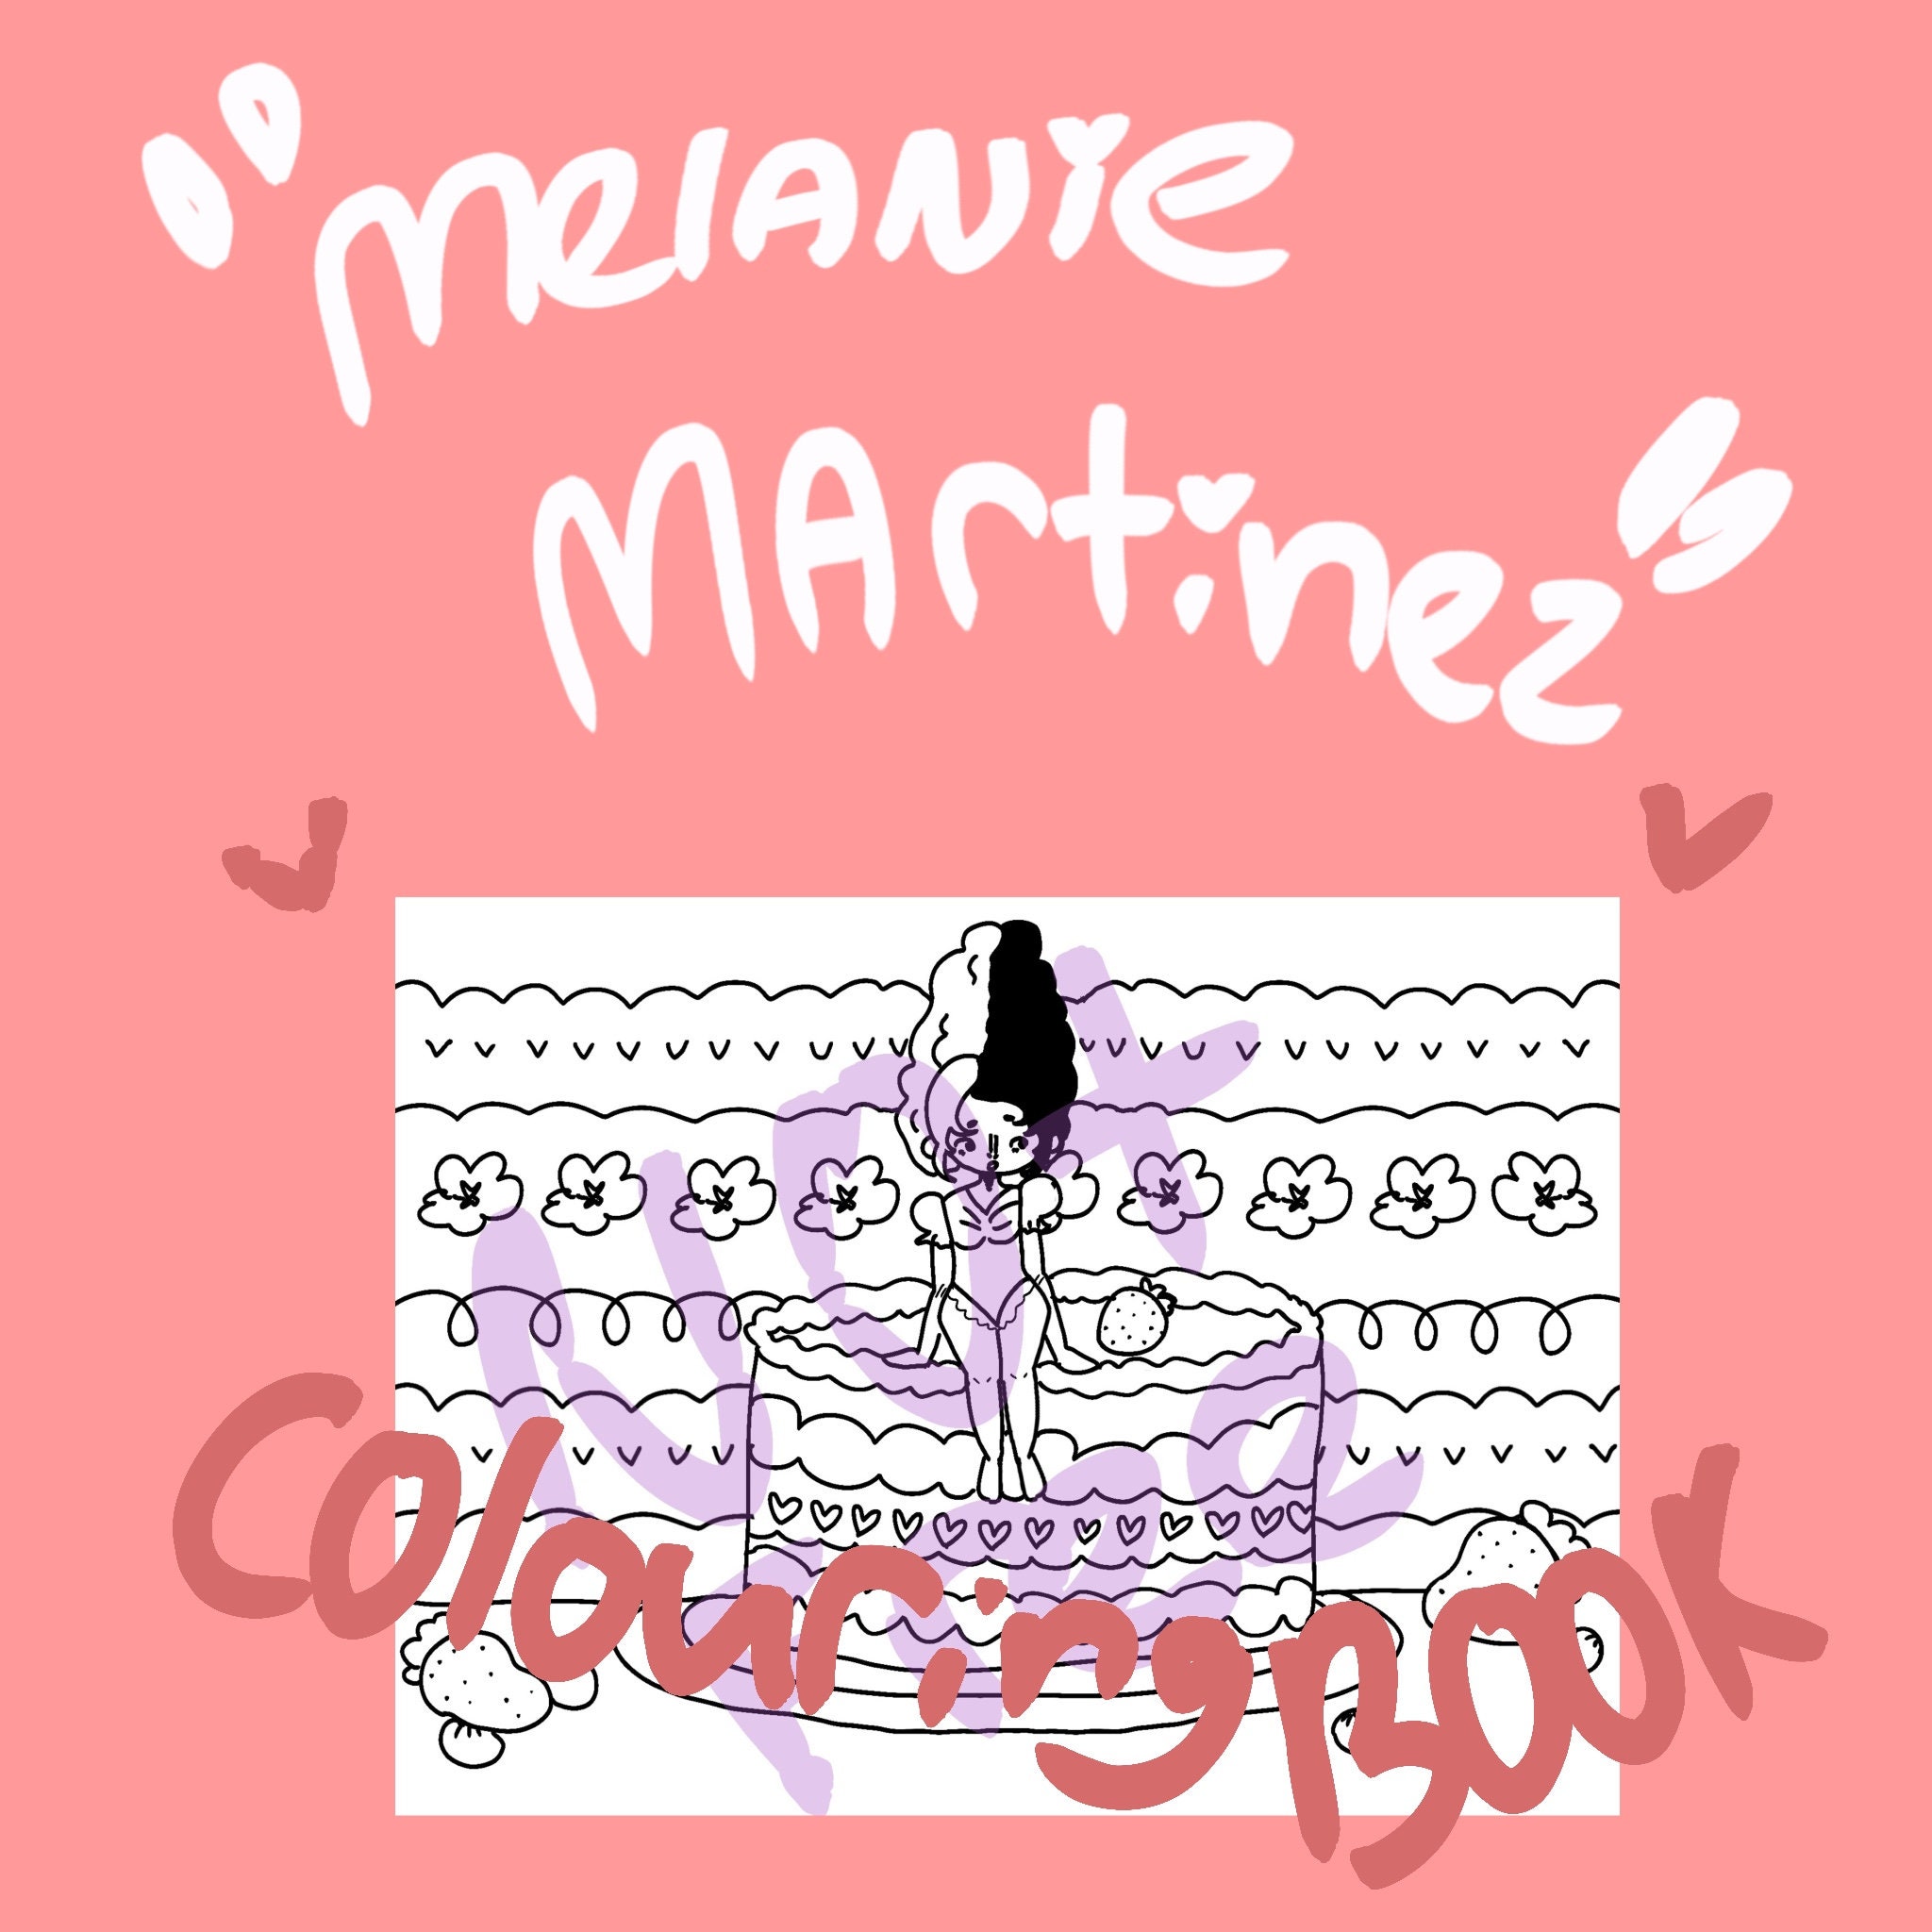 Melanie Martinez Sticker, Portals New Album Stickers, Sticker Pink Fairy  sold by Lane-Eration | SKU 41249218 | 55% OFF Printerval